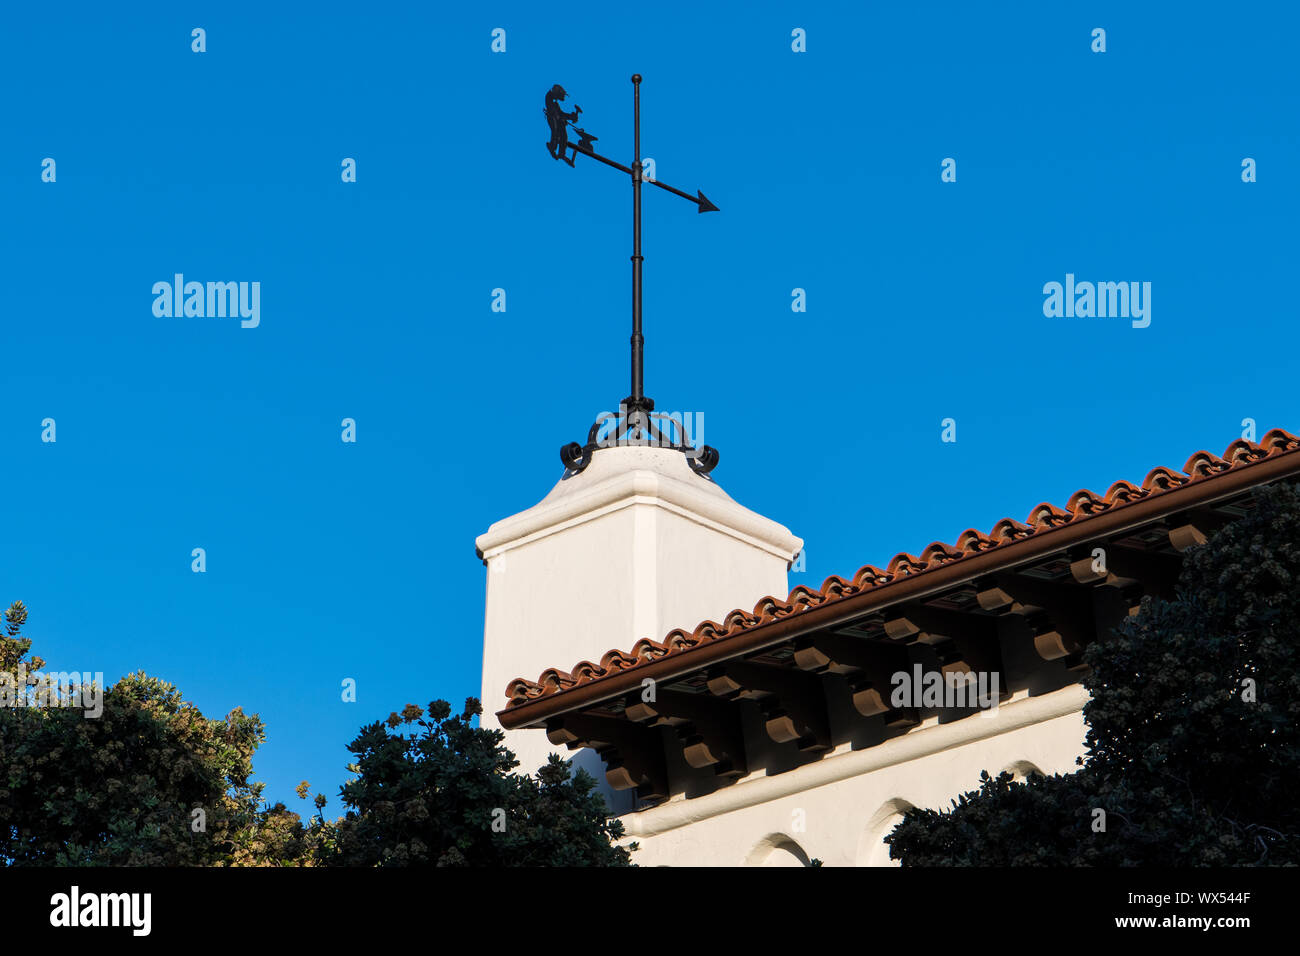 Wetterfahne auf einem weißen Spanish Colonial Revival Architektur Stil Gebäude mit einem roten Ziegeldach - Santa Barbara, Kalifornien Stockfoto